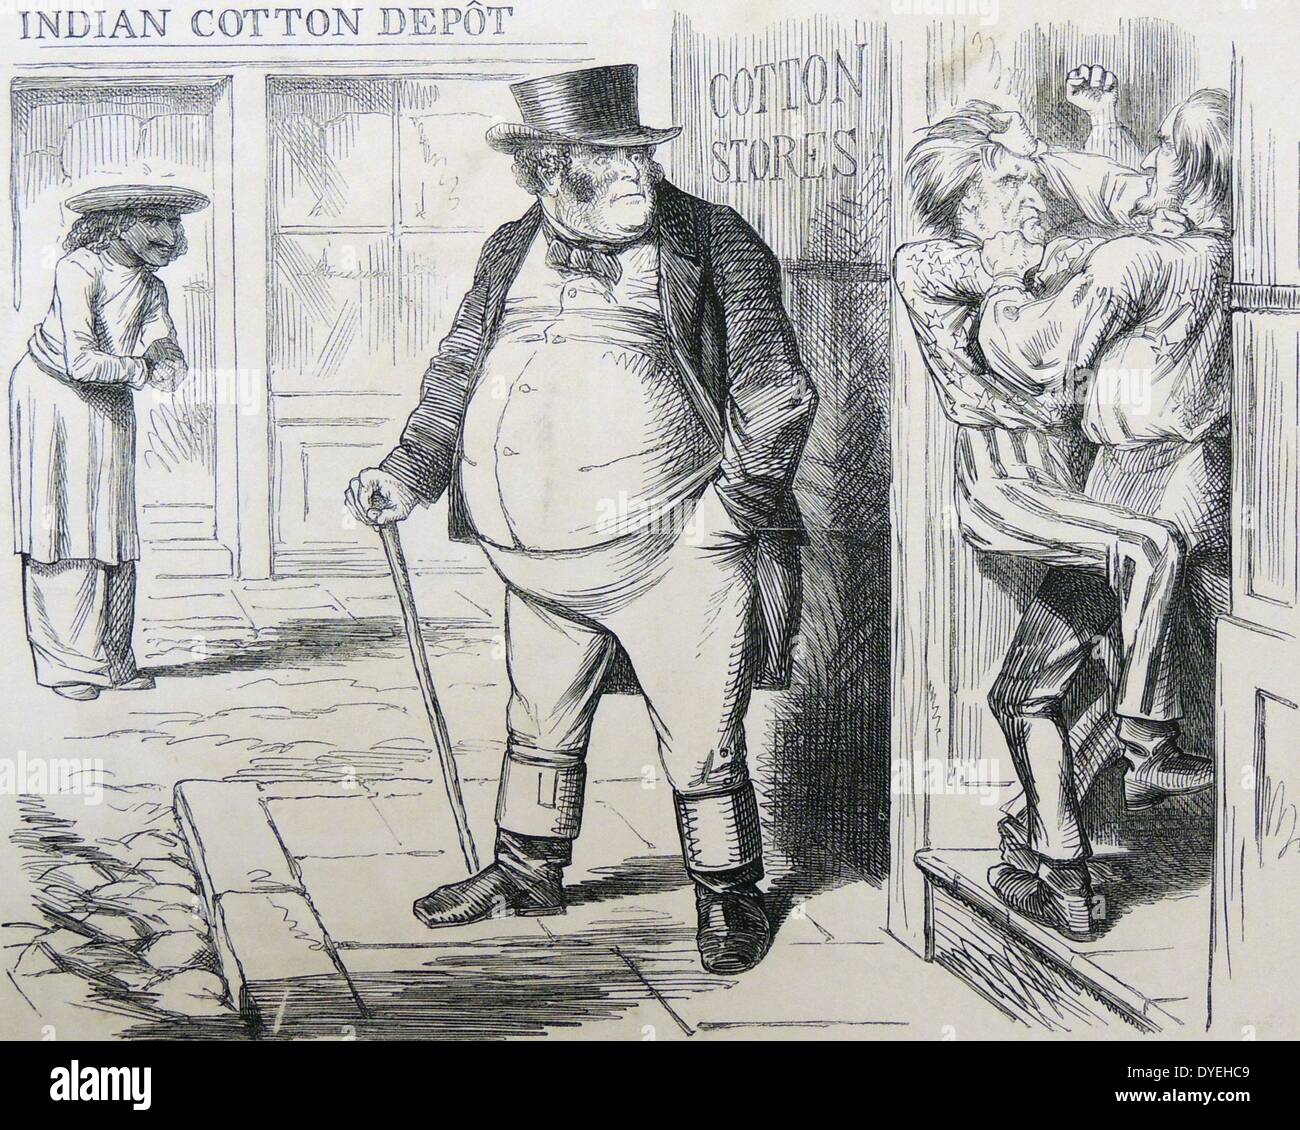 Amerikanischer Bürgerkrieg unterbrochenen Lieferungen von Rohbaumwolle zu England Lancashire Cotton Mills. Großbritannien stellte sich nach Indien für Baumwolle. Cartoon von ''Punch'', London, November 1861. Stockfoto